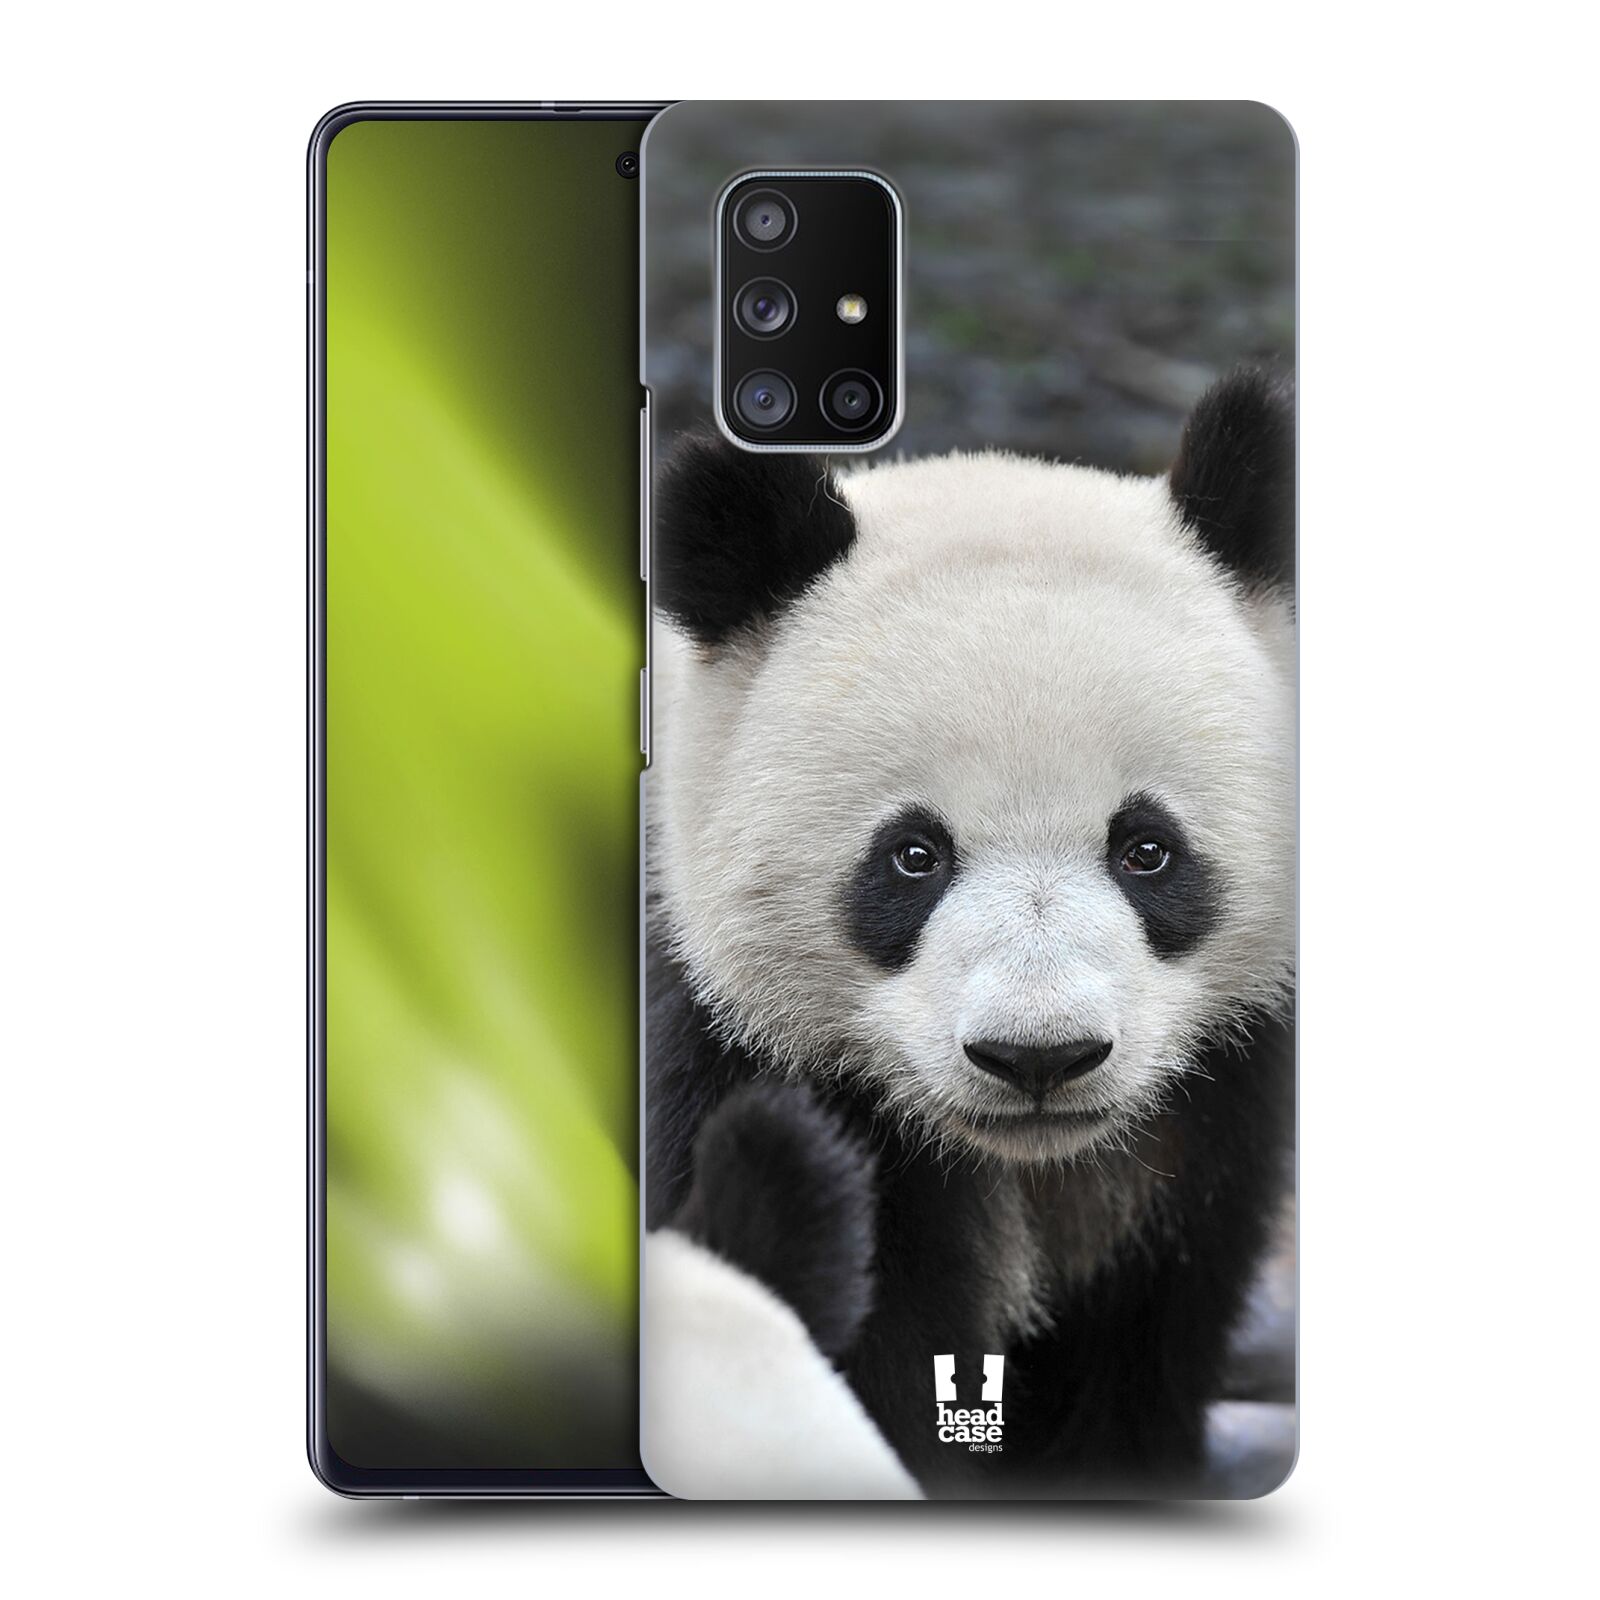 Zadní obal pro mobil Samsung Galaxy A51 5G - HEAD CASE - Svět zvířat medvěd panda